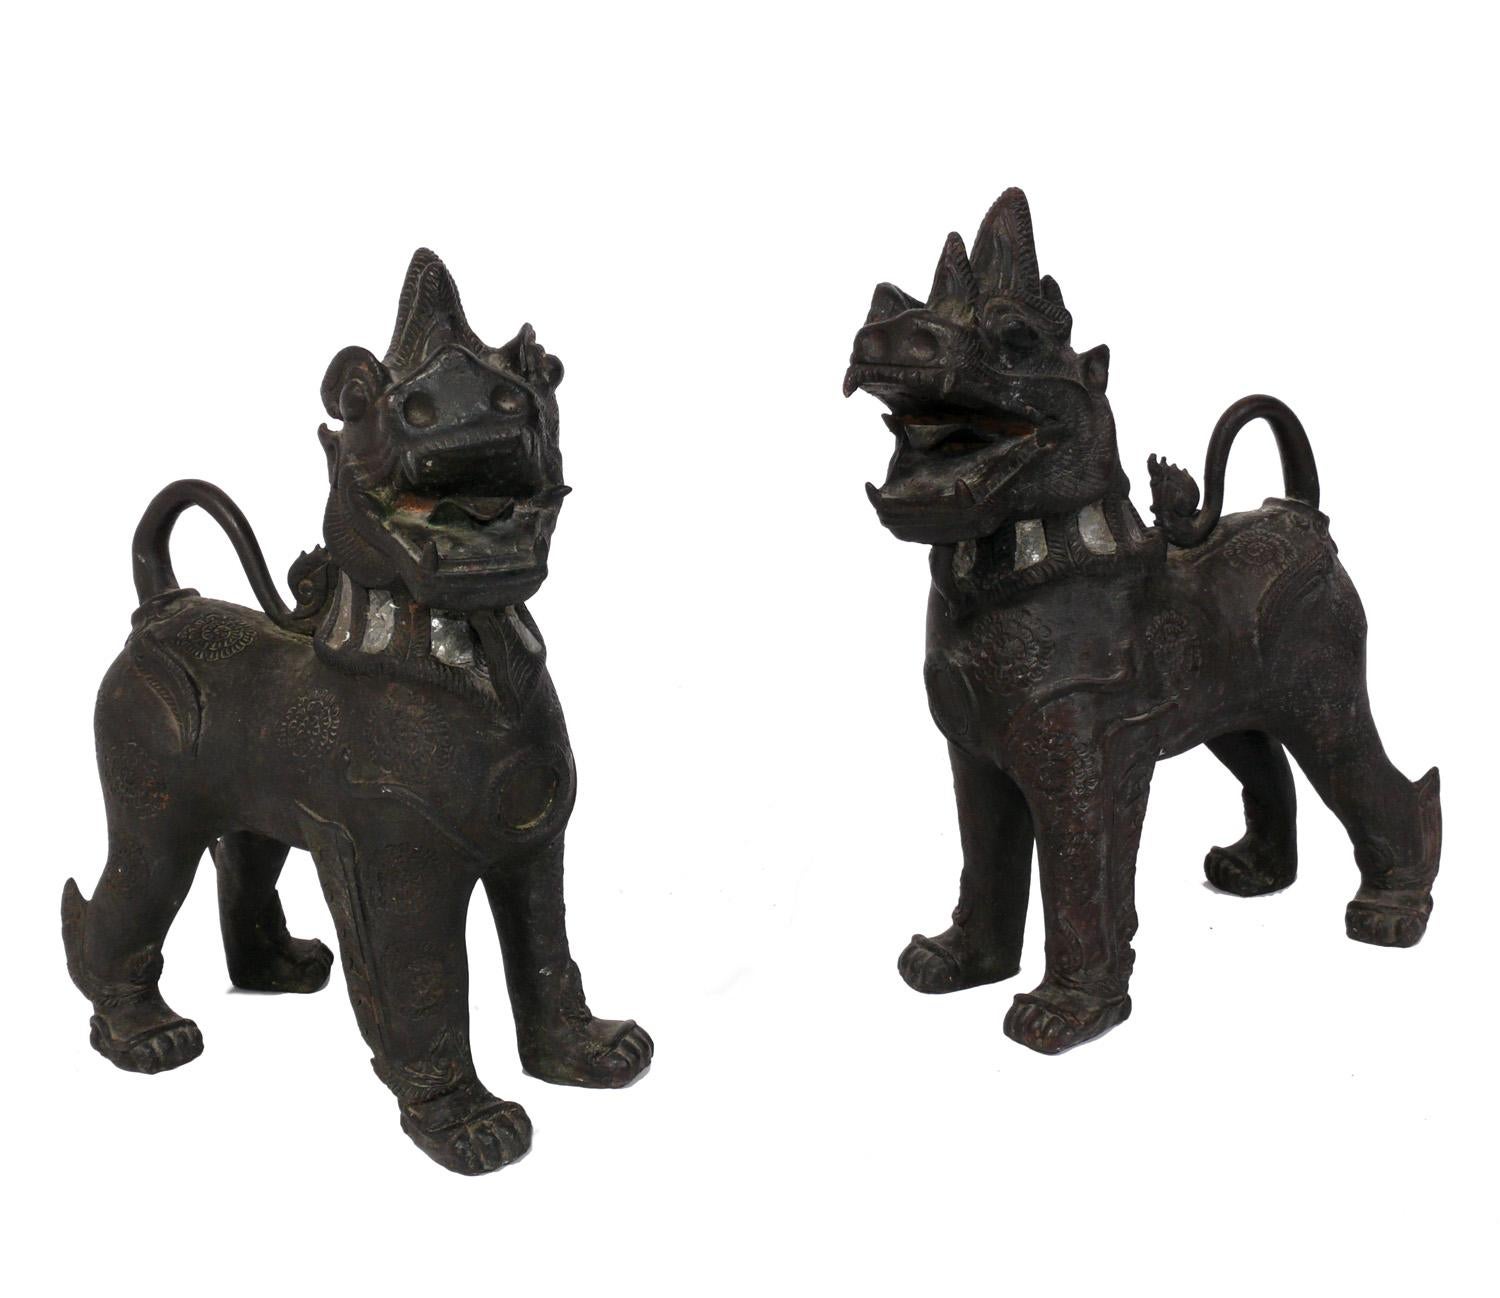 Paar asiatische Bronze- und Glaseinlegearbeiten Foo Dogs oder Kylin Dragon, wahrscheinlich chinesisch, um 1950 oder früher. Sie haben ihre warme, ursprüngliche Patina behalten. Sie wurden aus dem Nachlass eines japanischen Amerikaners in Manhattan